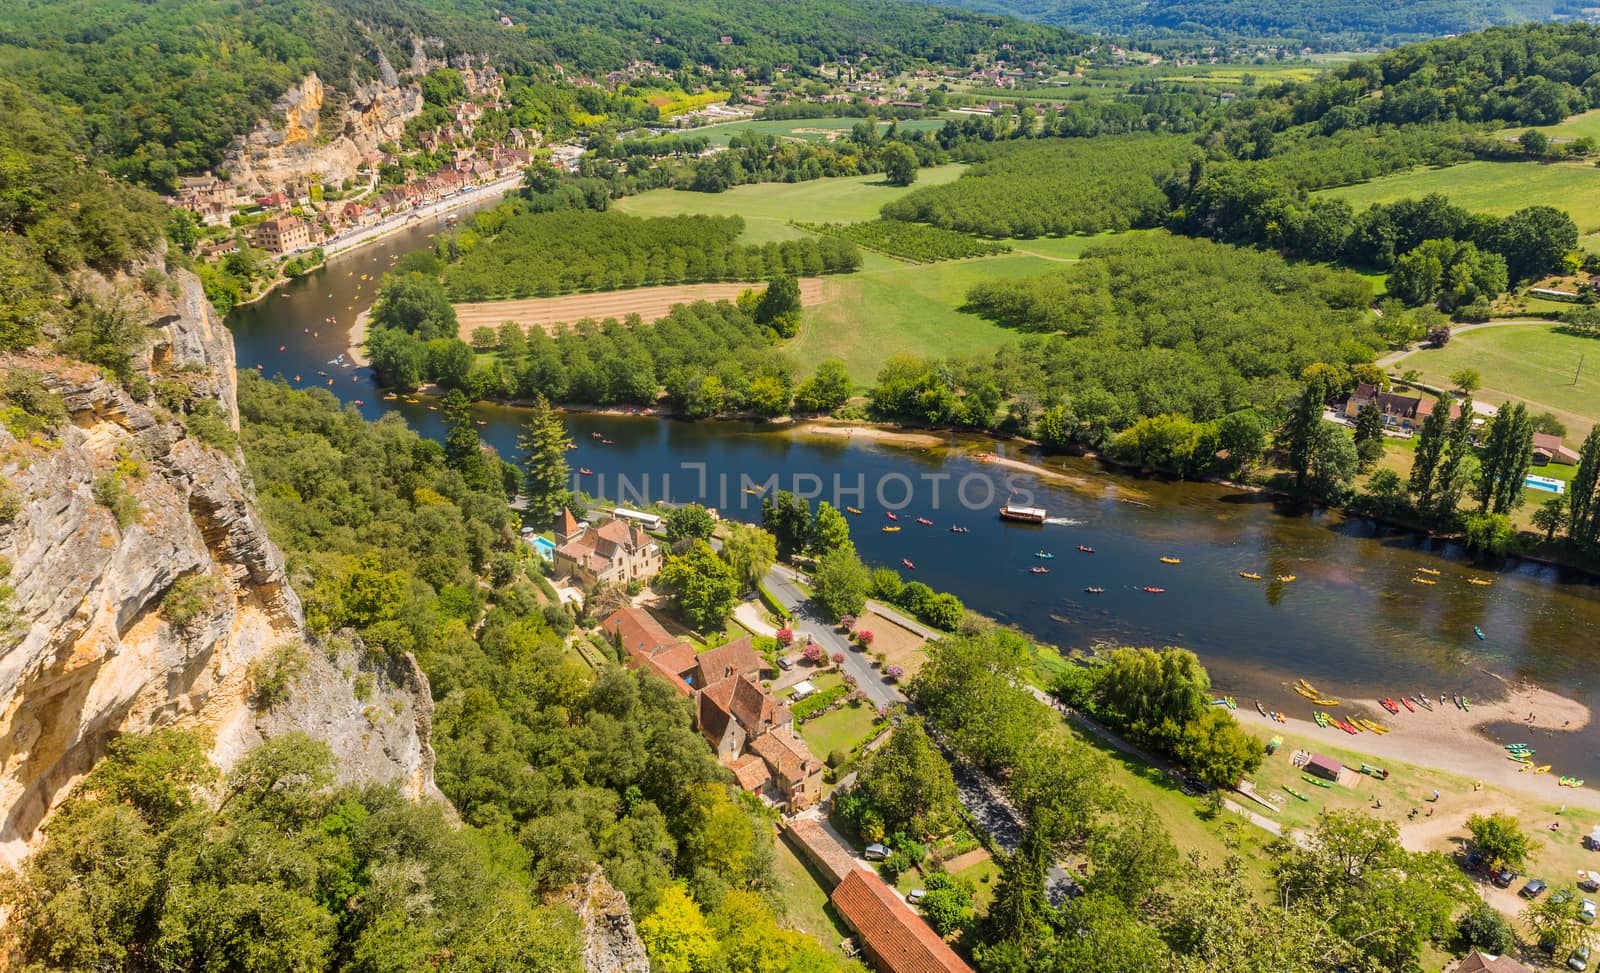 La Roque-Gageac, Dordogne by zittto